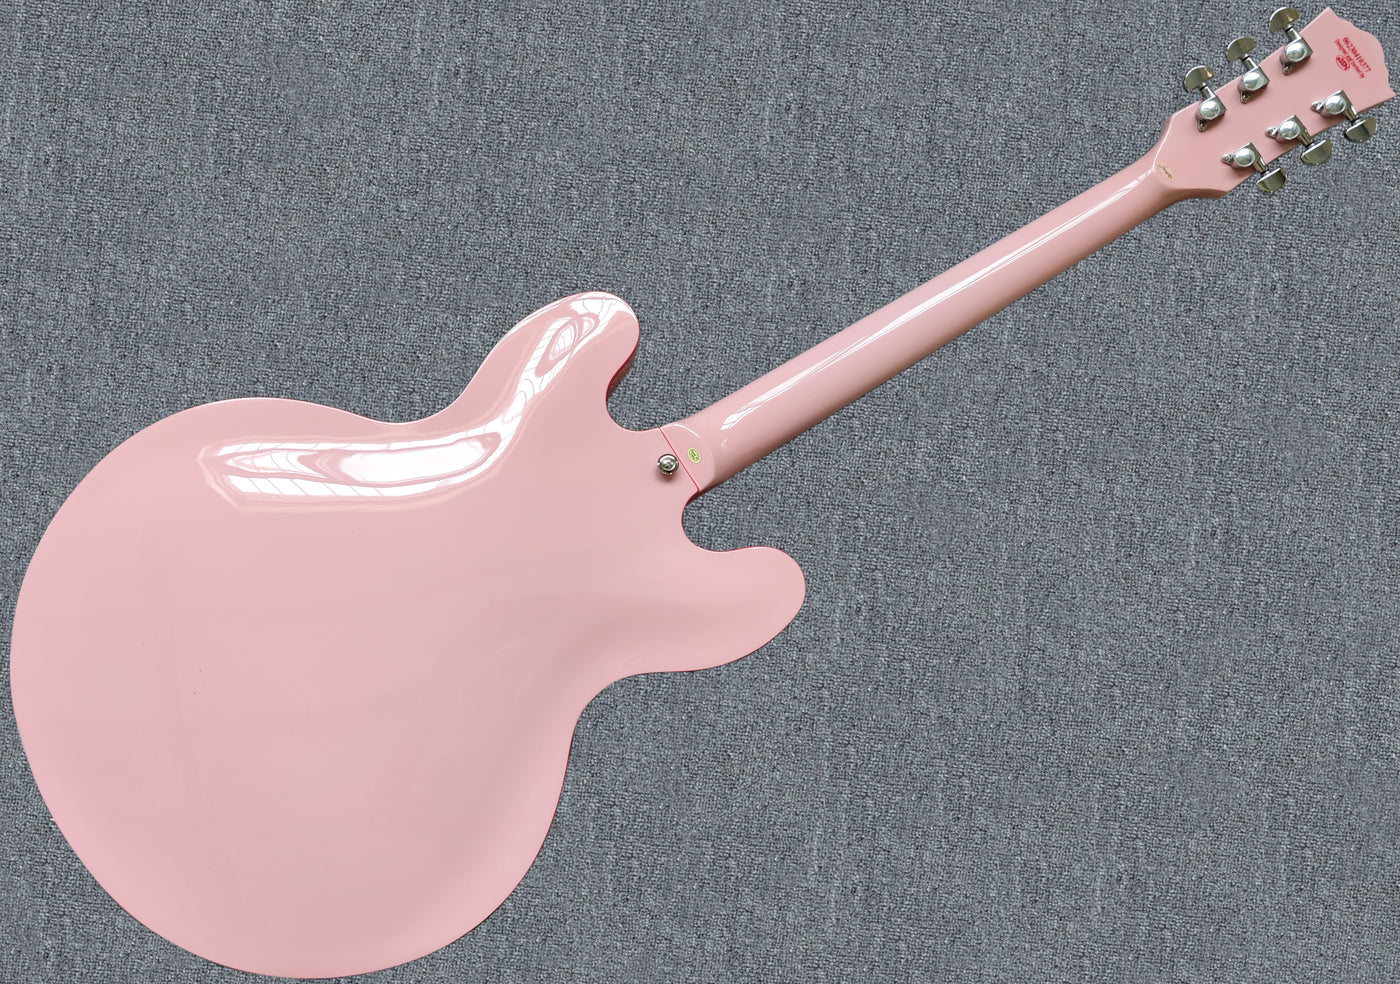 electric bass guitars pink